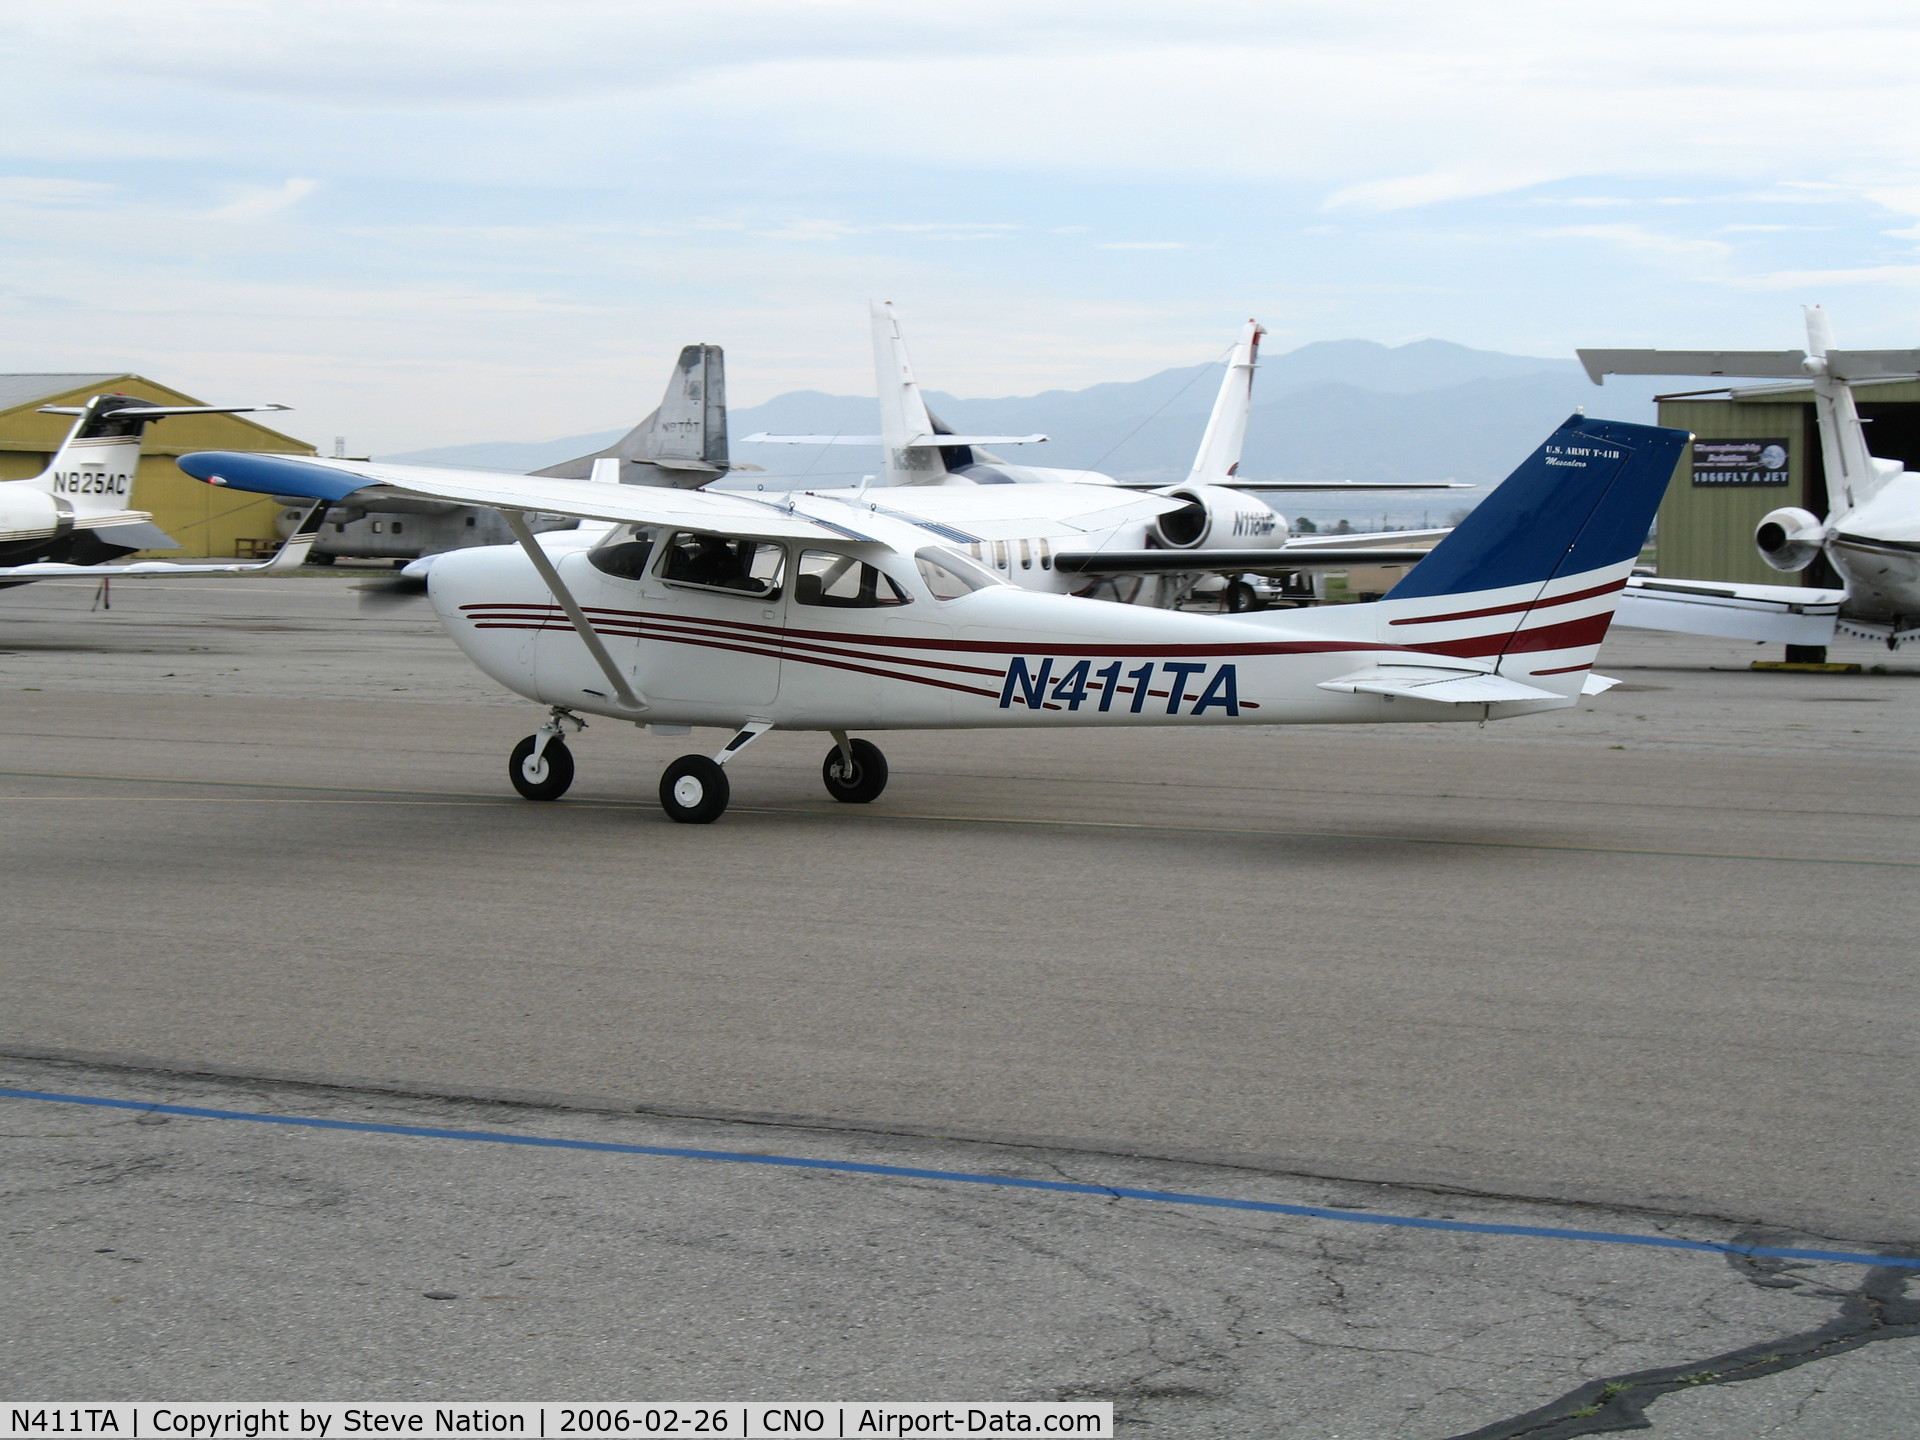 N411TA, 1968 Cessna R172E C/N R172-0196, 1968 Cessna 172RE (marked as T-41A) taxying @ Chino Municipal Airport, CA